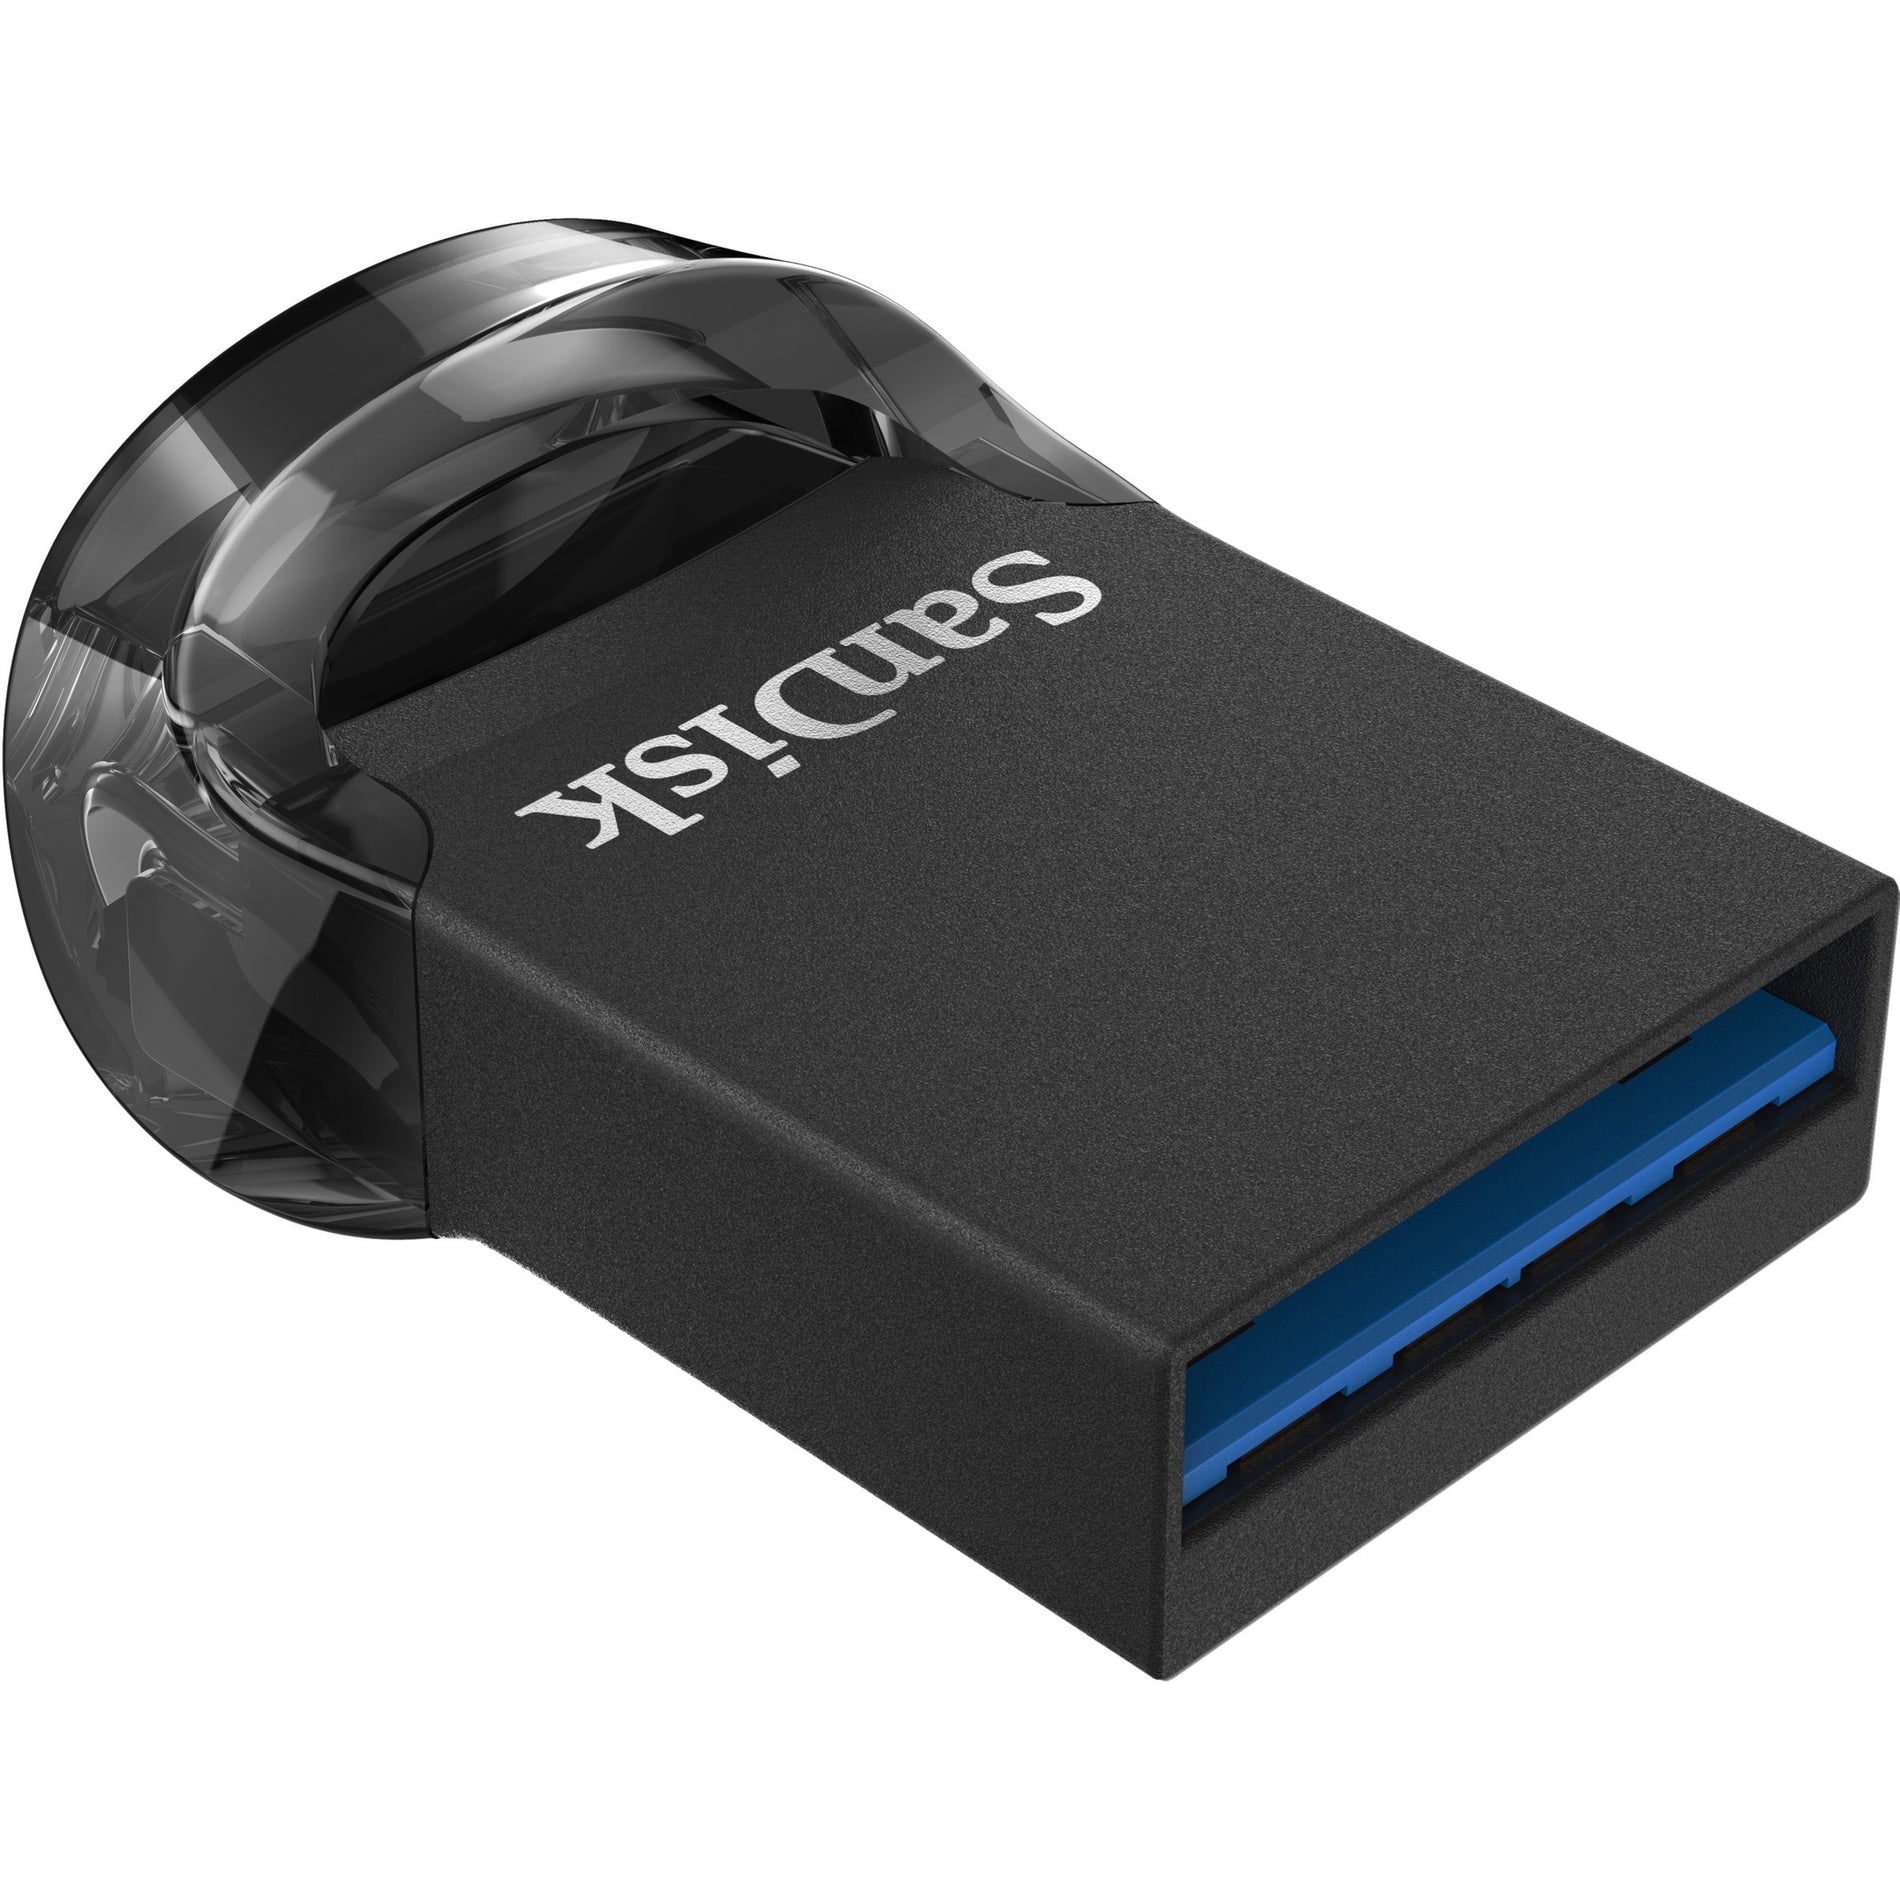 SanDisk SDCZ430-032G-A46 Ultra Fit USB 3.1 Flash Drive 32GB Trasferimento ad alta velocità dei dati e design compatto